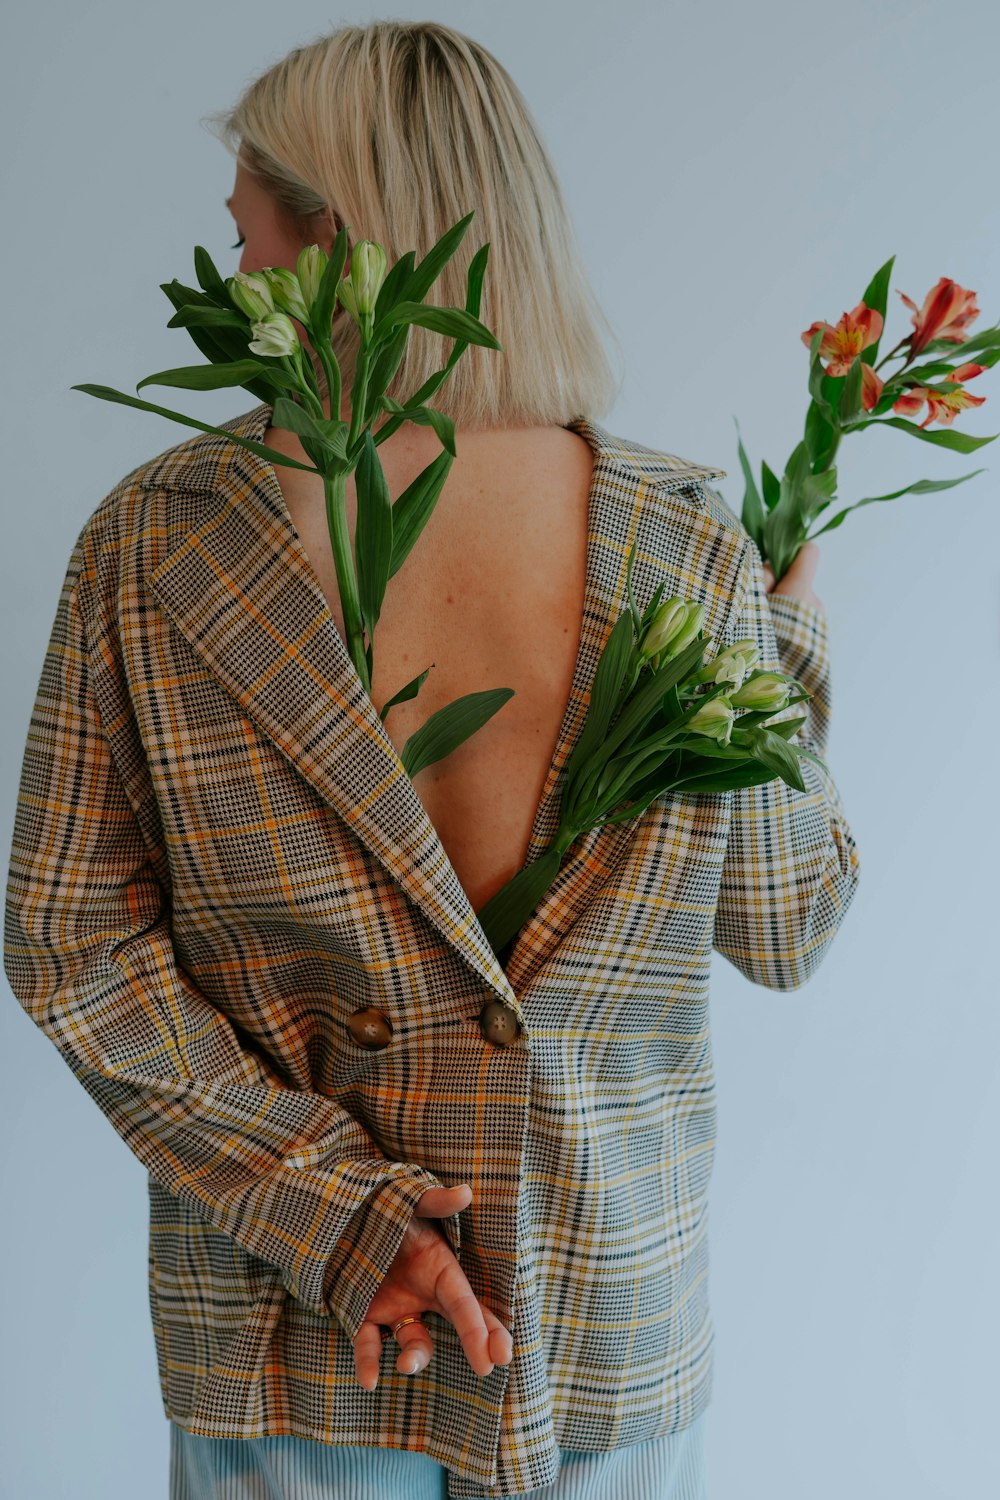 uma mulher vestindo uma jaqueta xadrez segurando flores